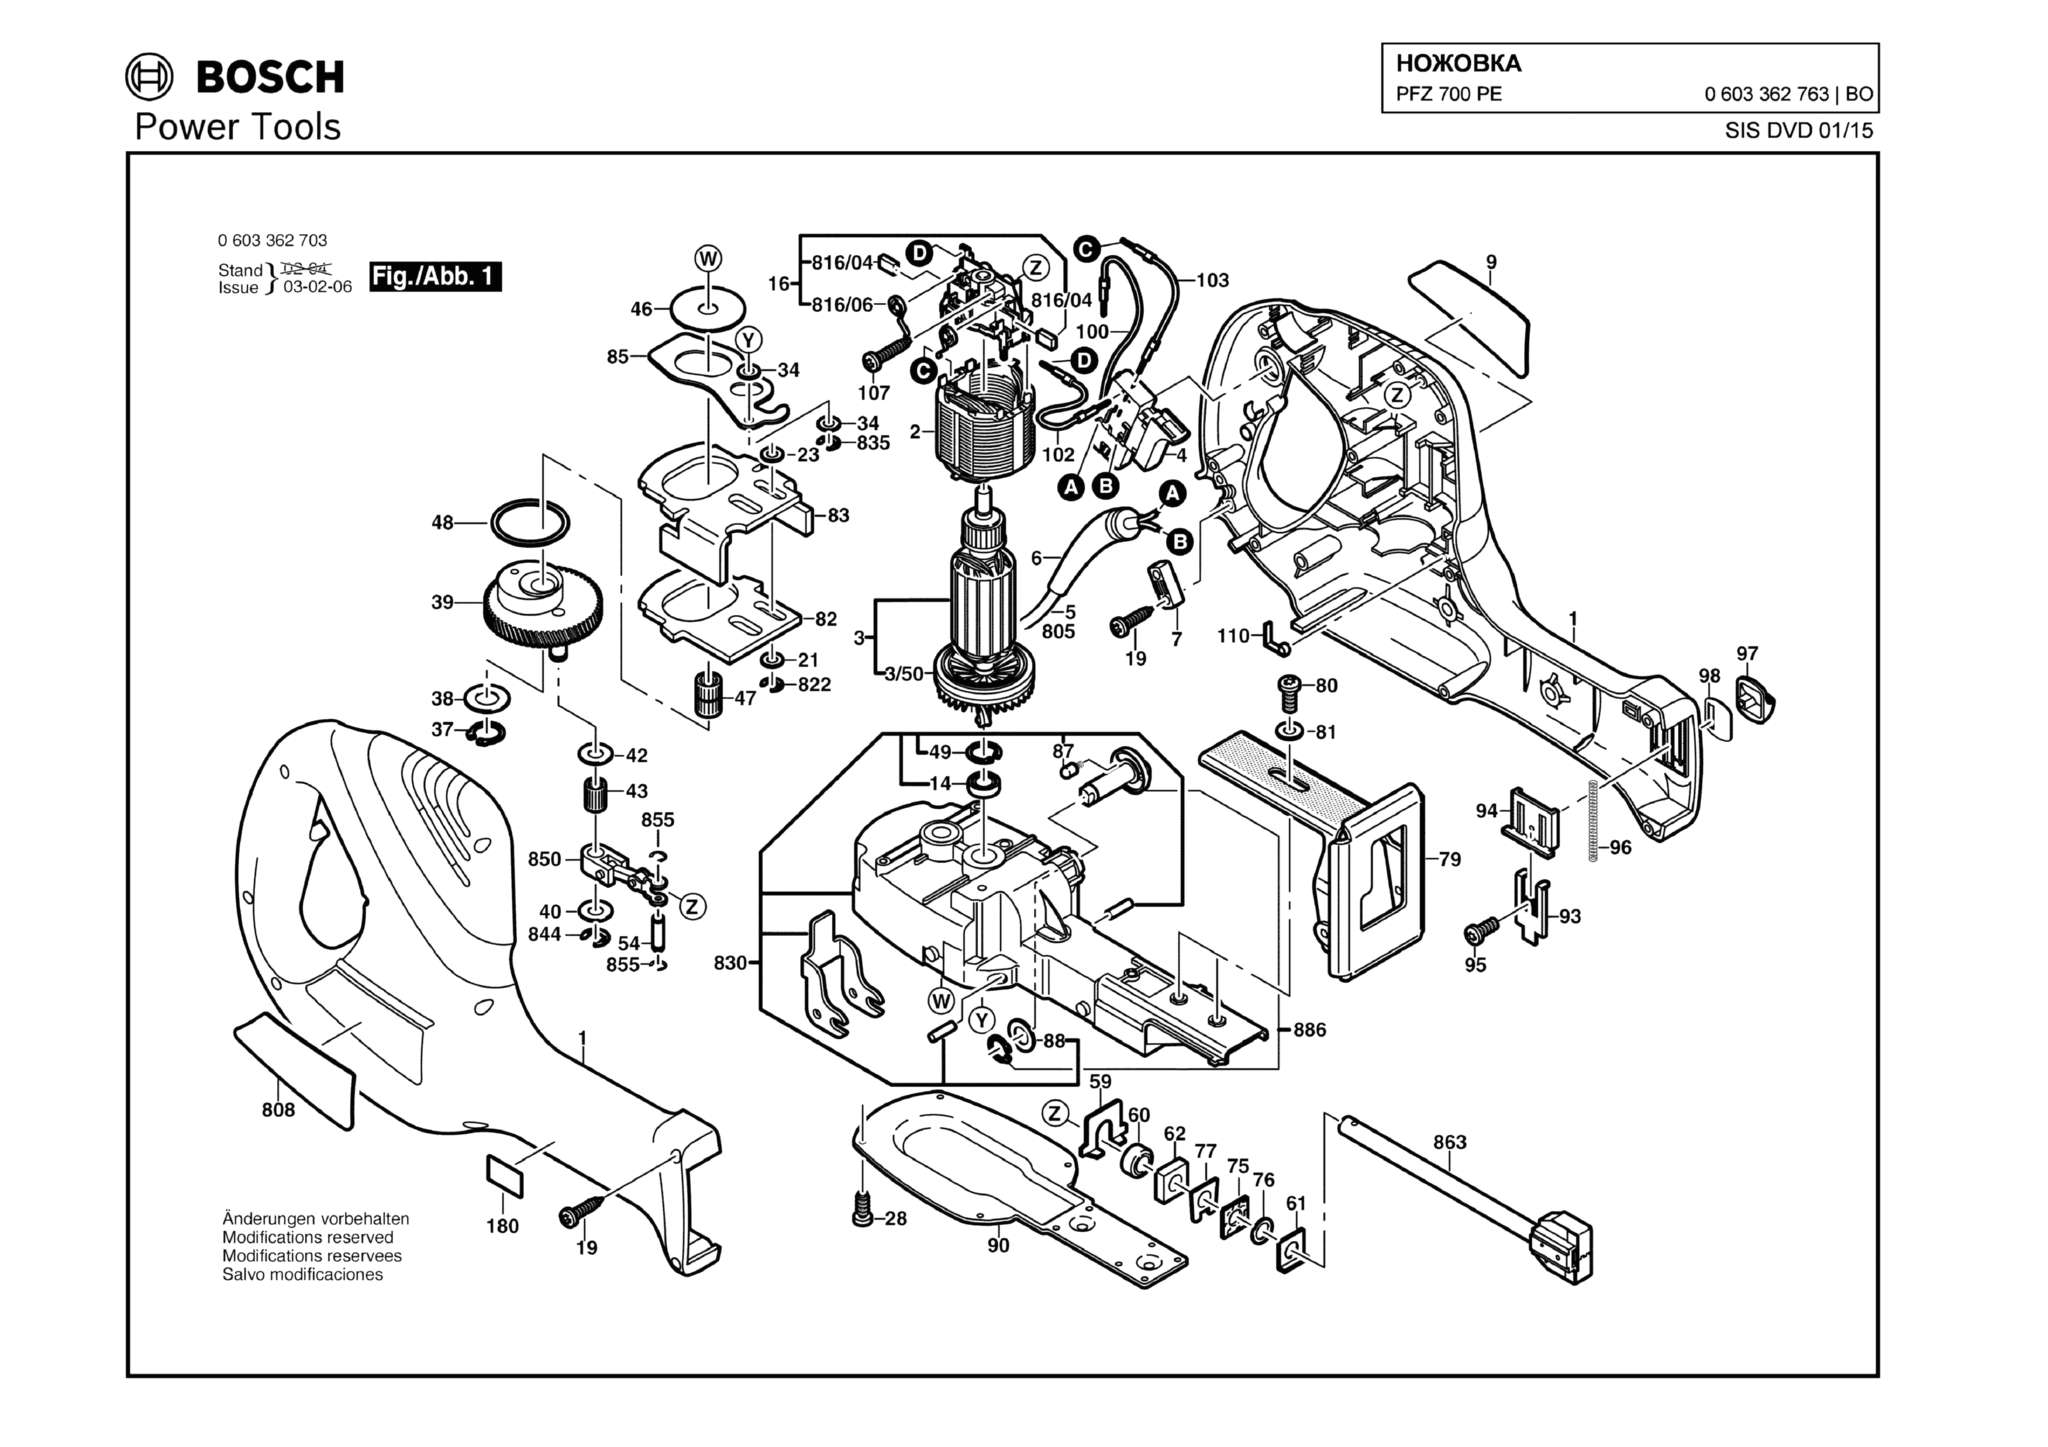 Запчасти, схема и деталировка Bosch PFZ 700 PE (ТИП 0603362763)